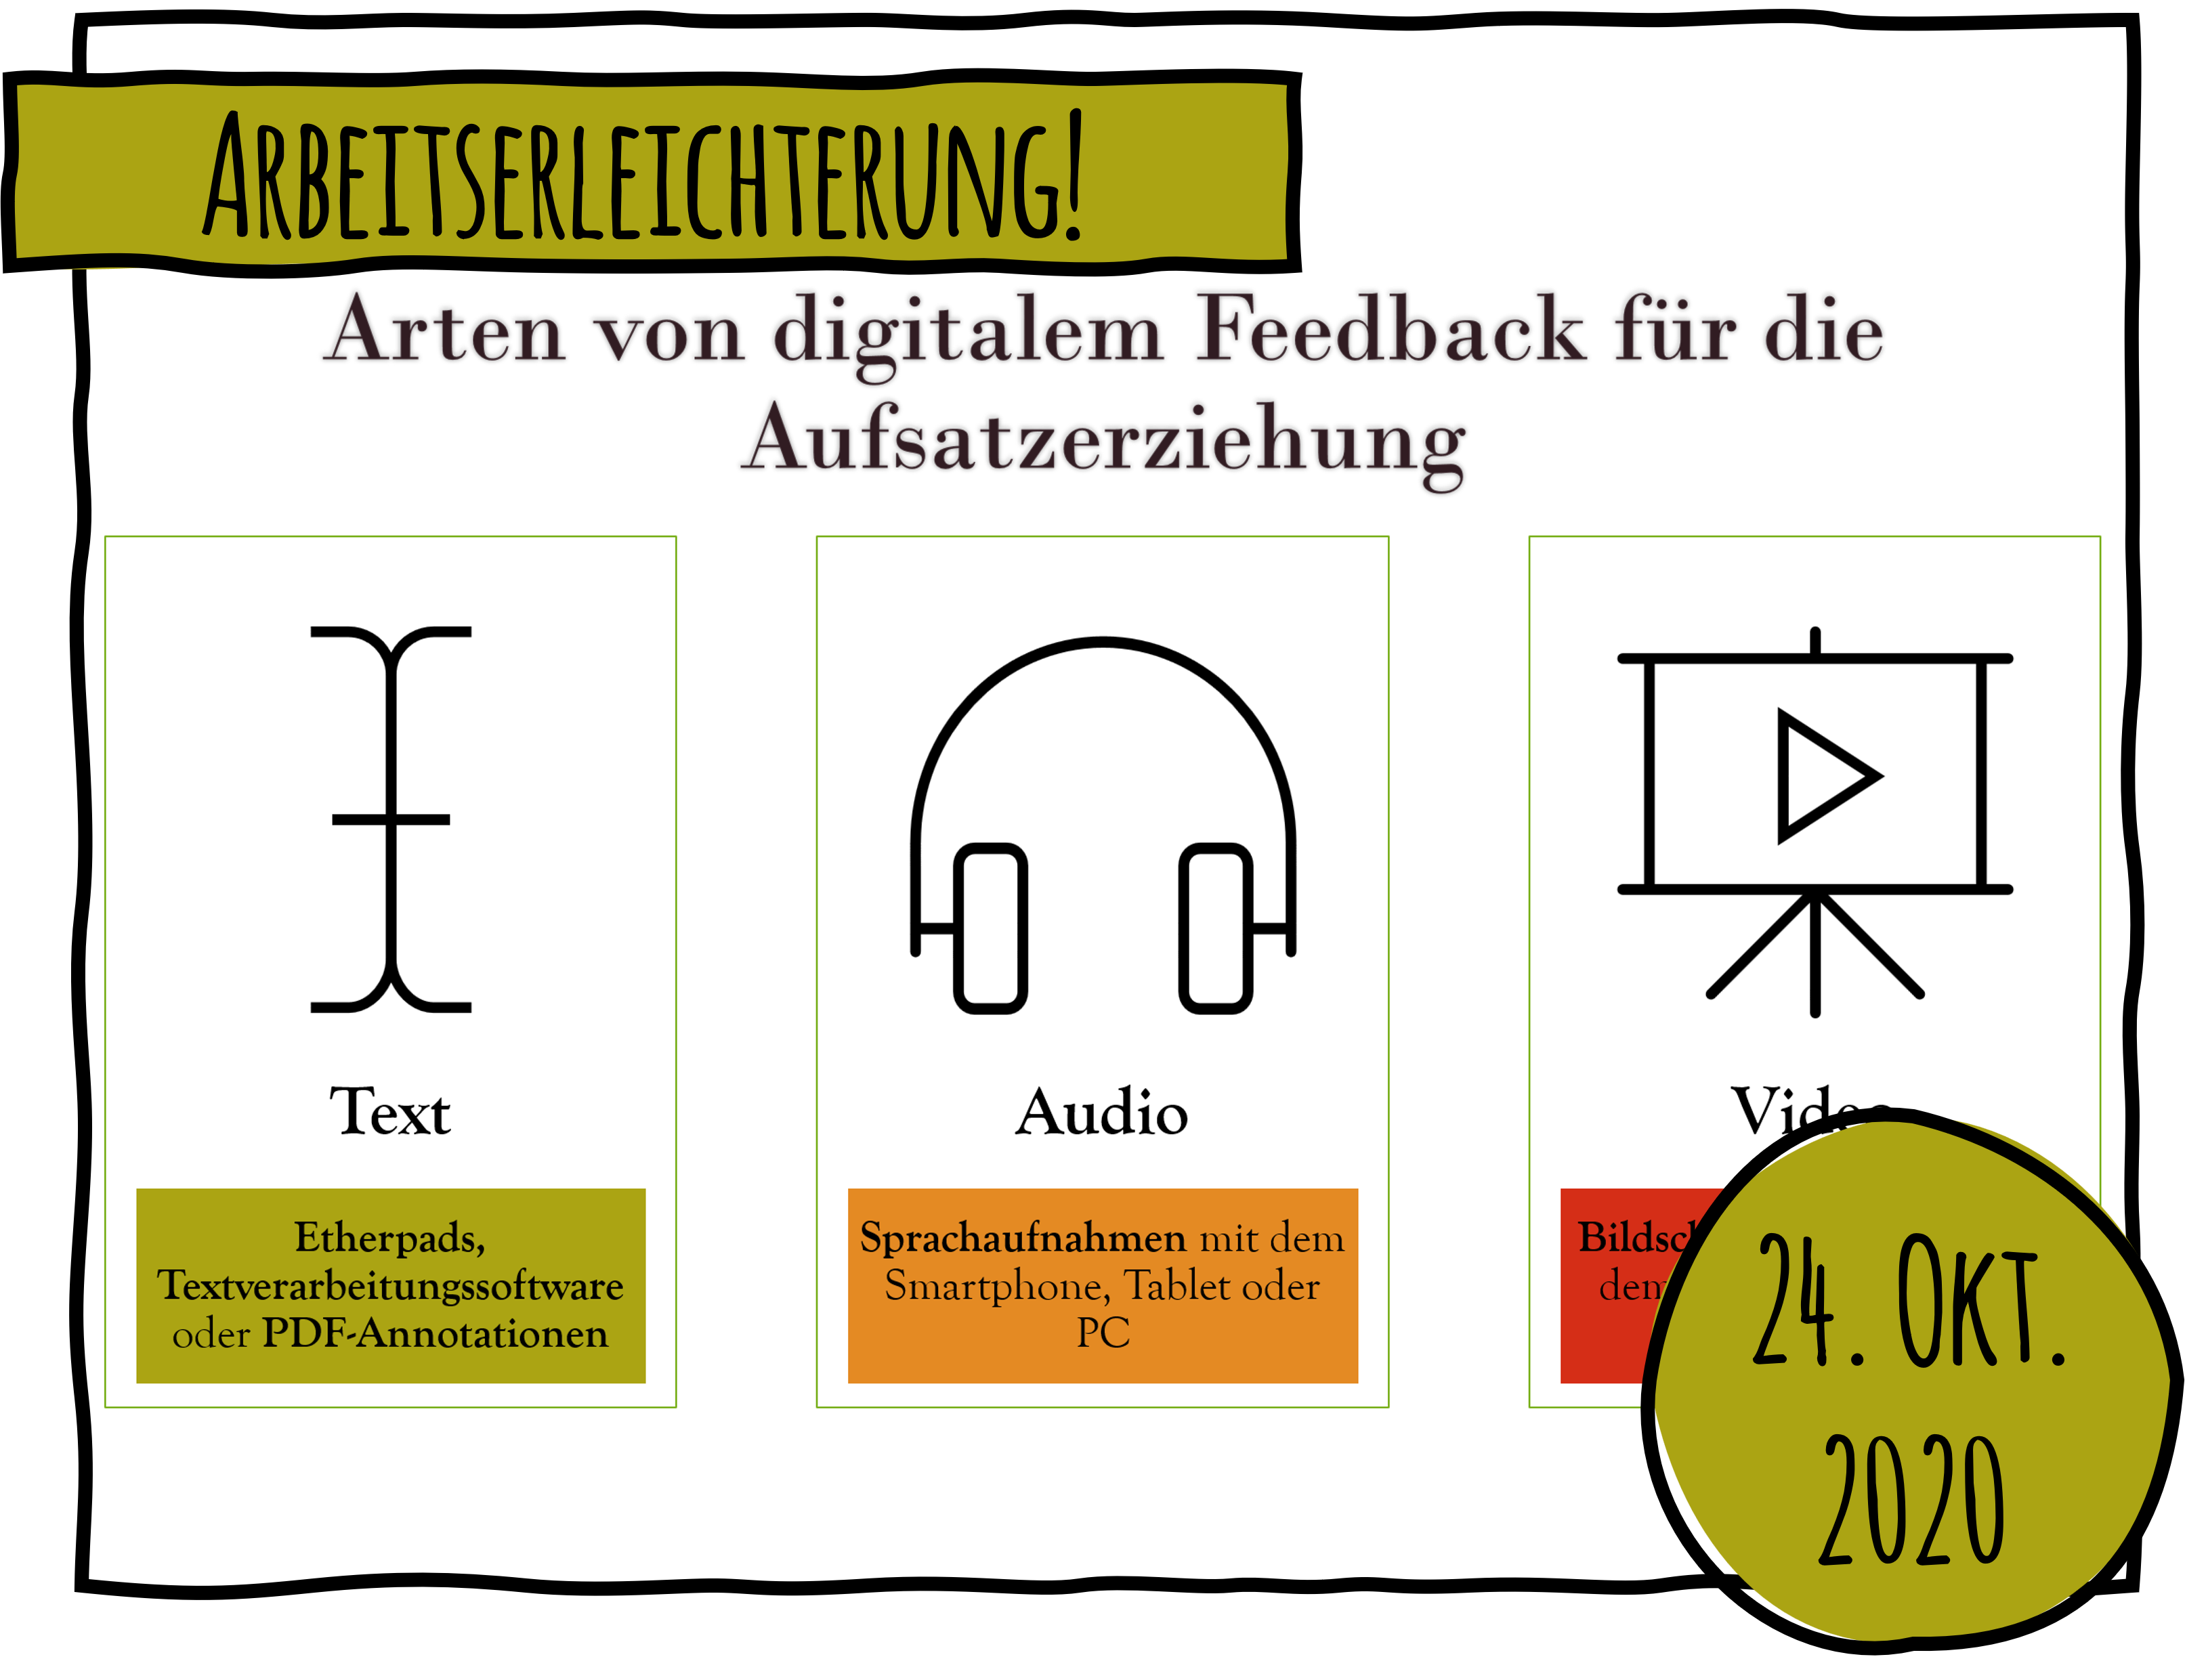 Digitales Feedback für den Deutschunterricht